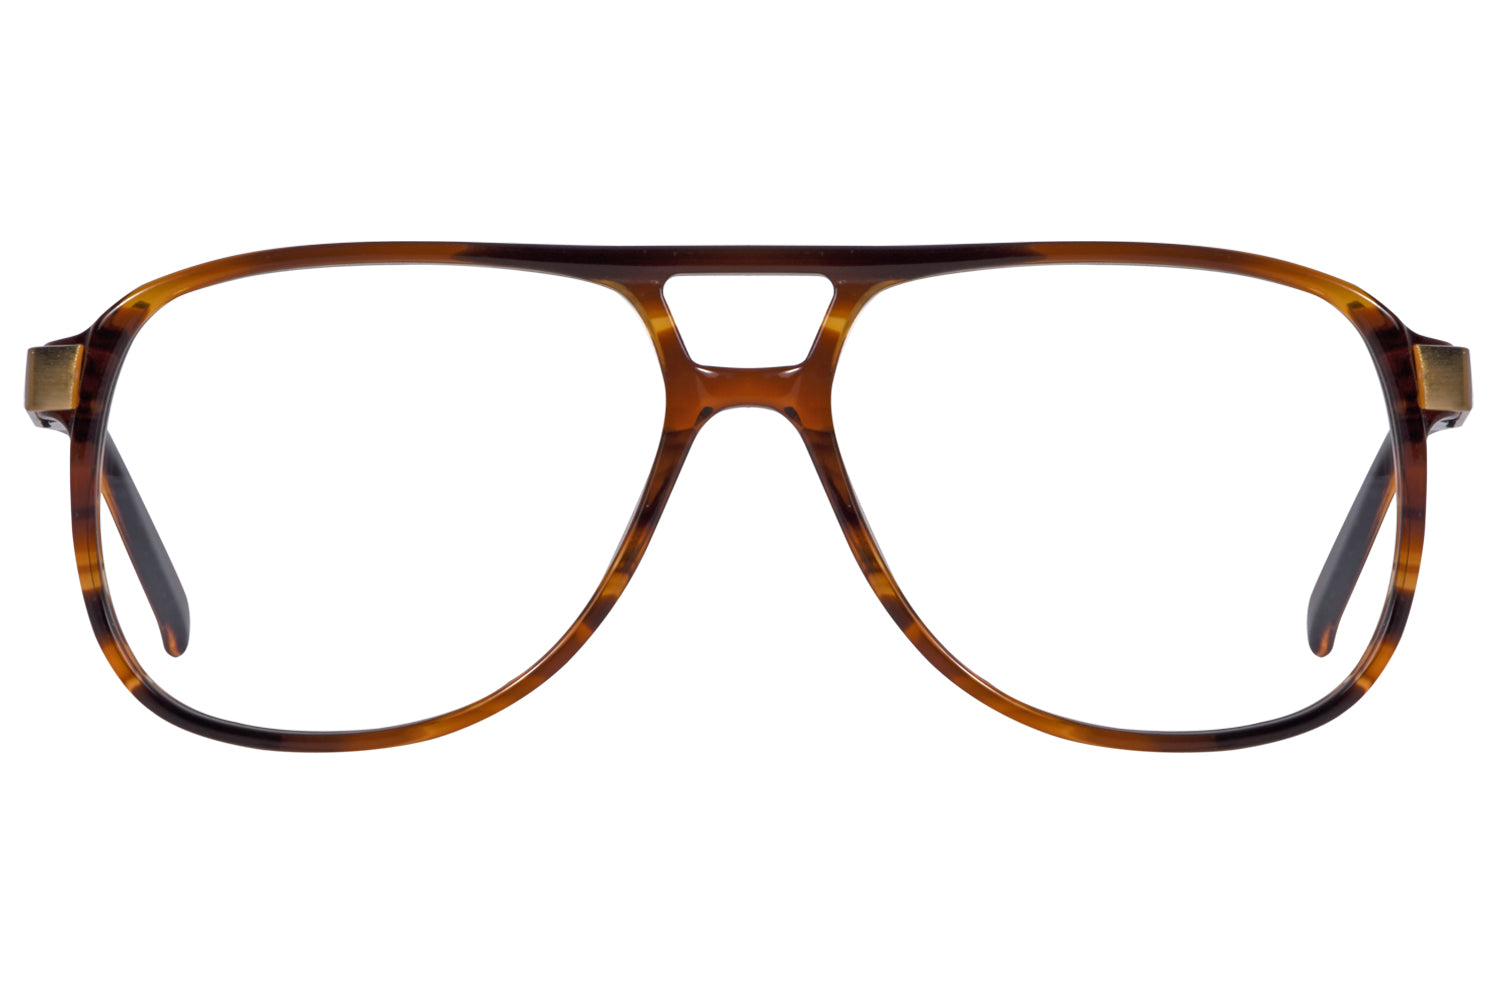 Aviator Eyeglasses Frames - For Men - Optical Store – Opticalmartpk